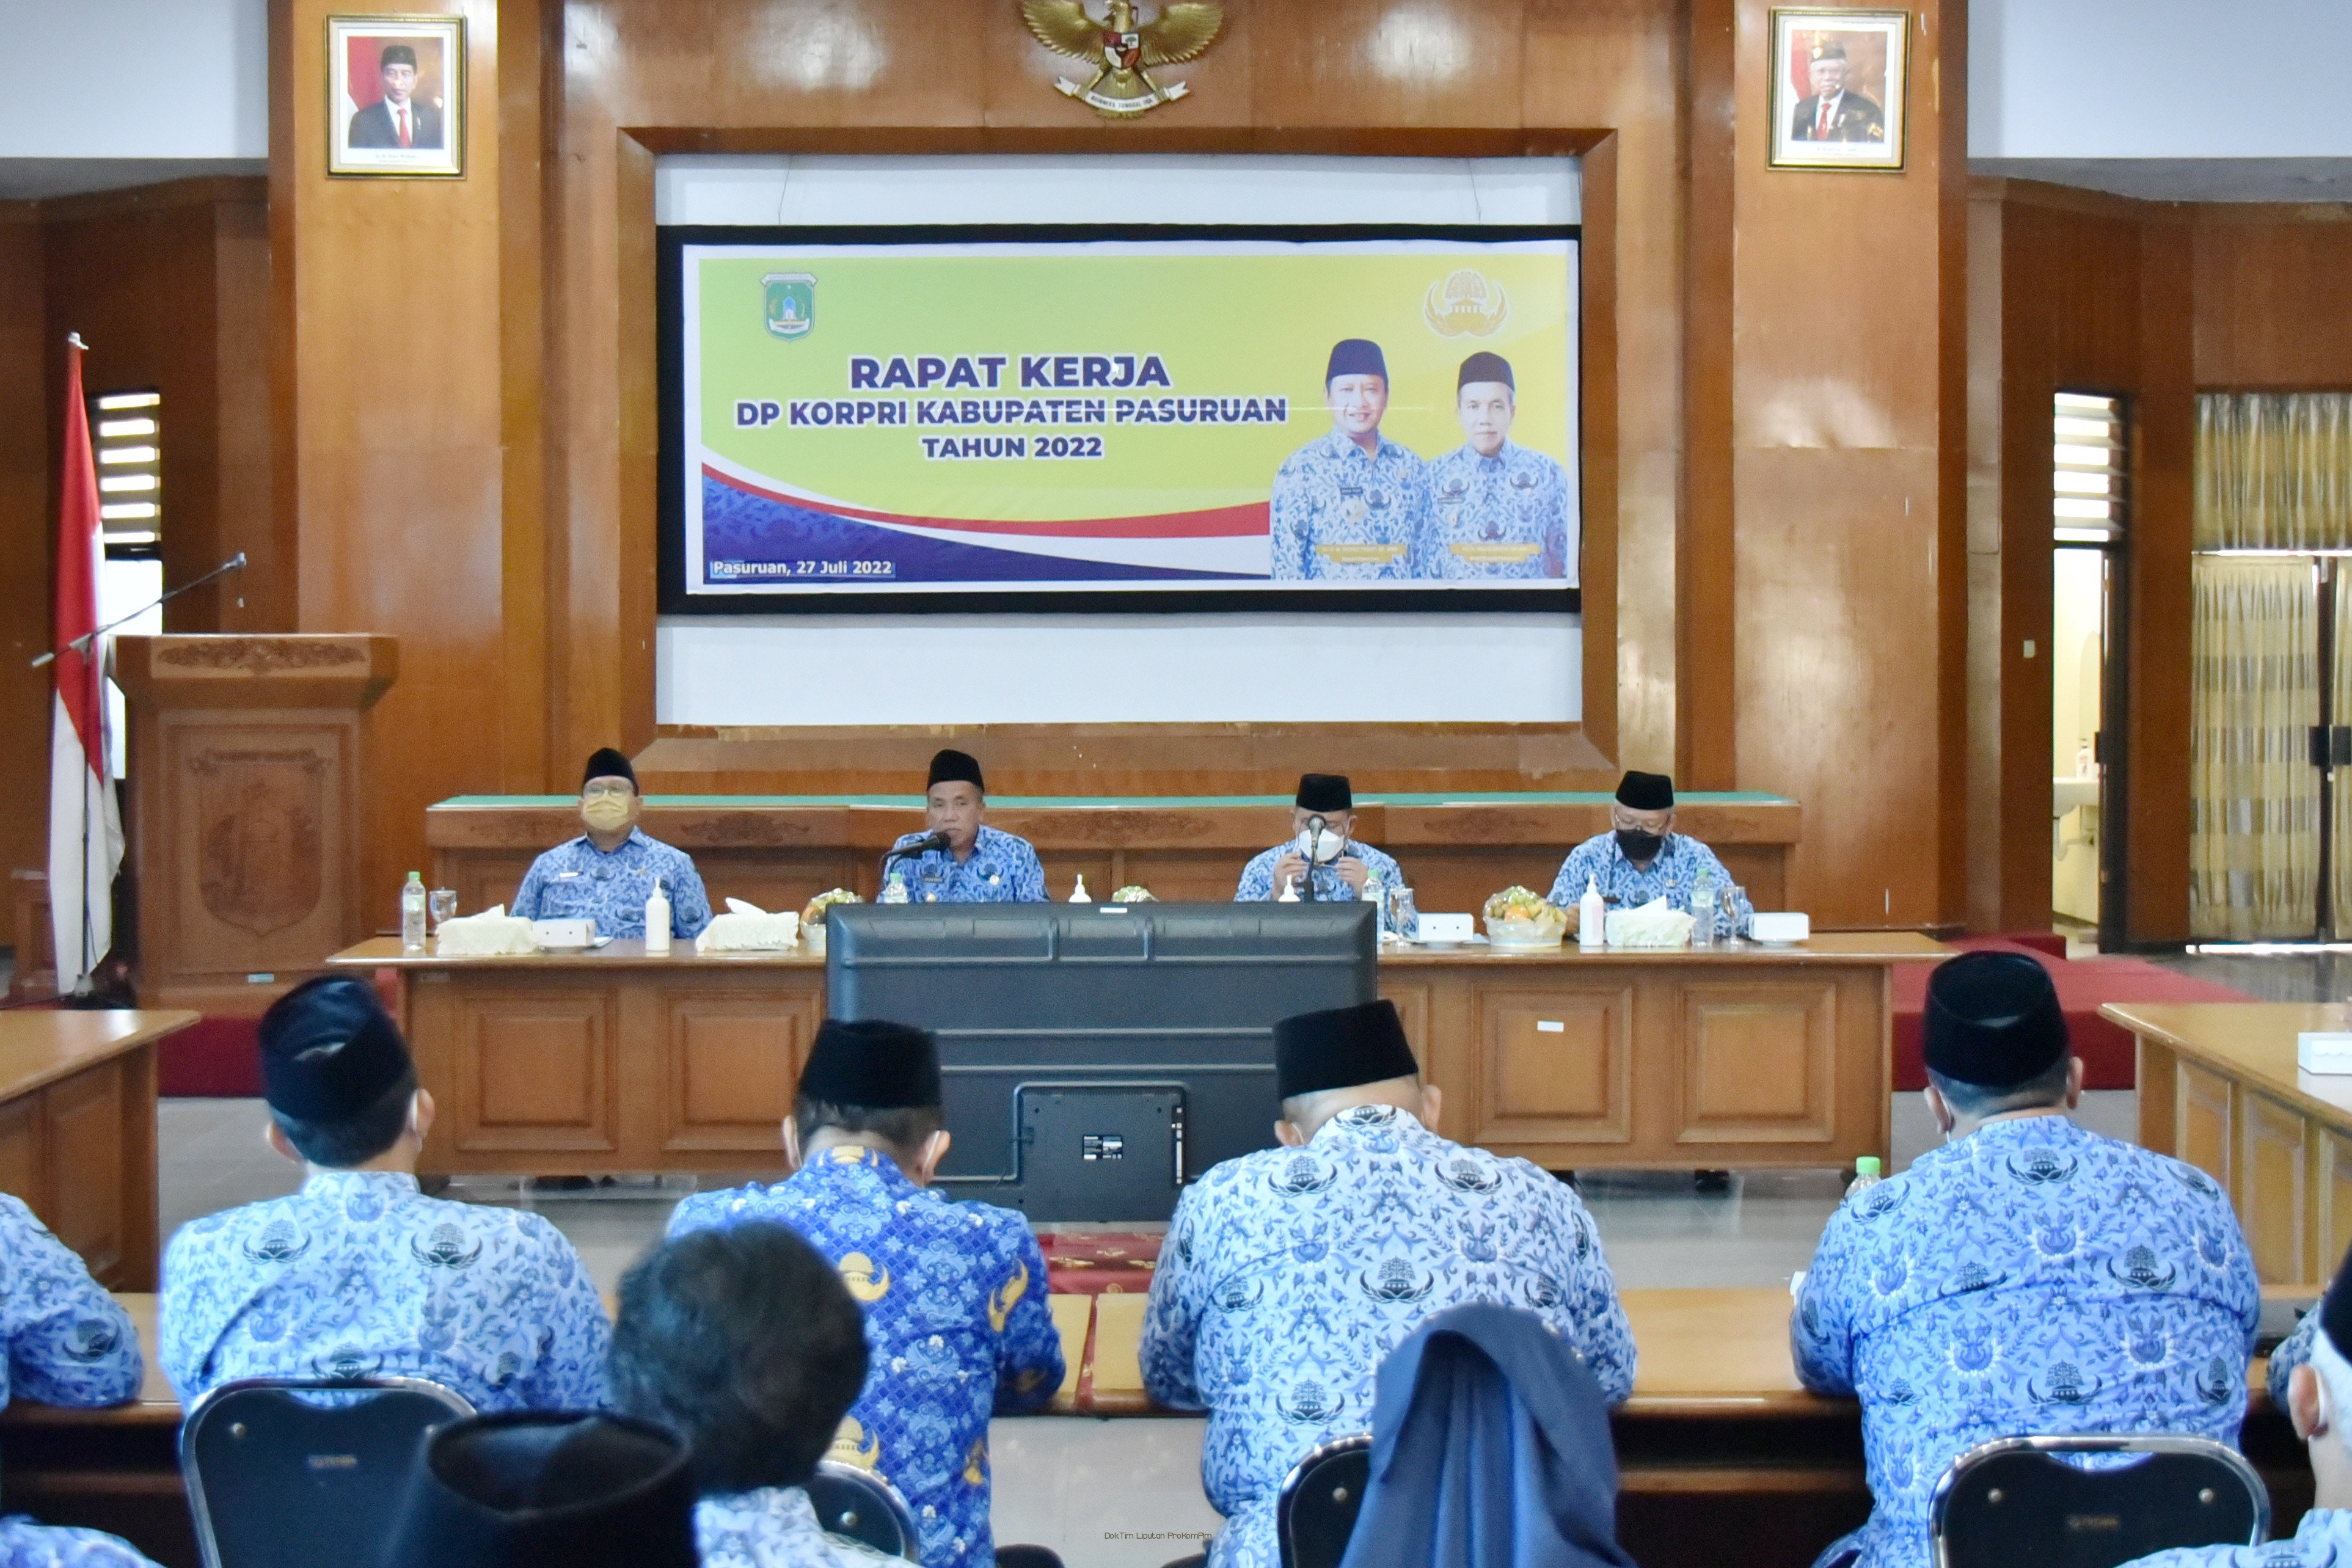   Semua Anggota KORPRI Kabupaten Pasuruan Berkewajiban Sukseskan Program Pembangunan